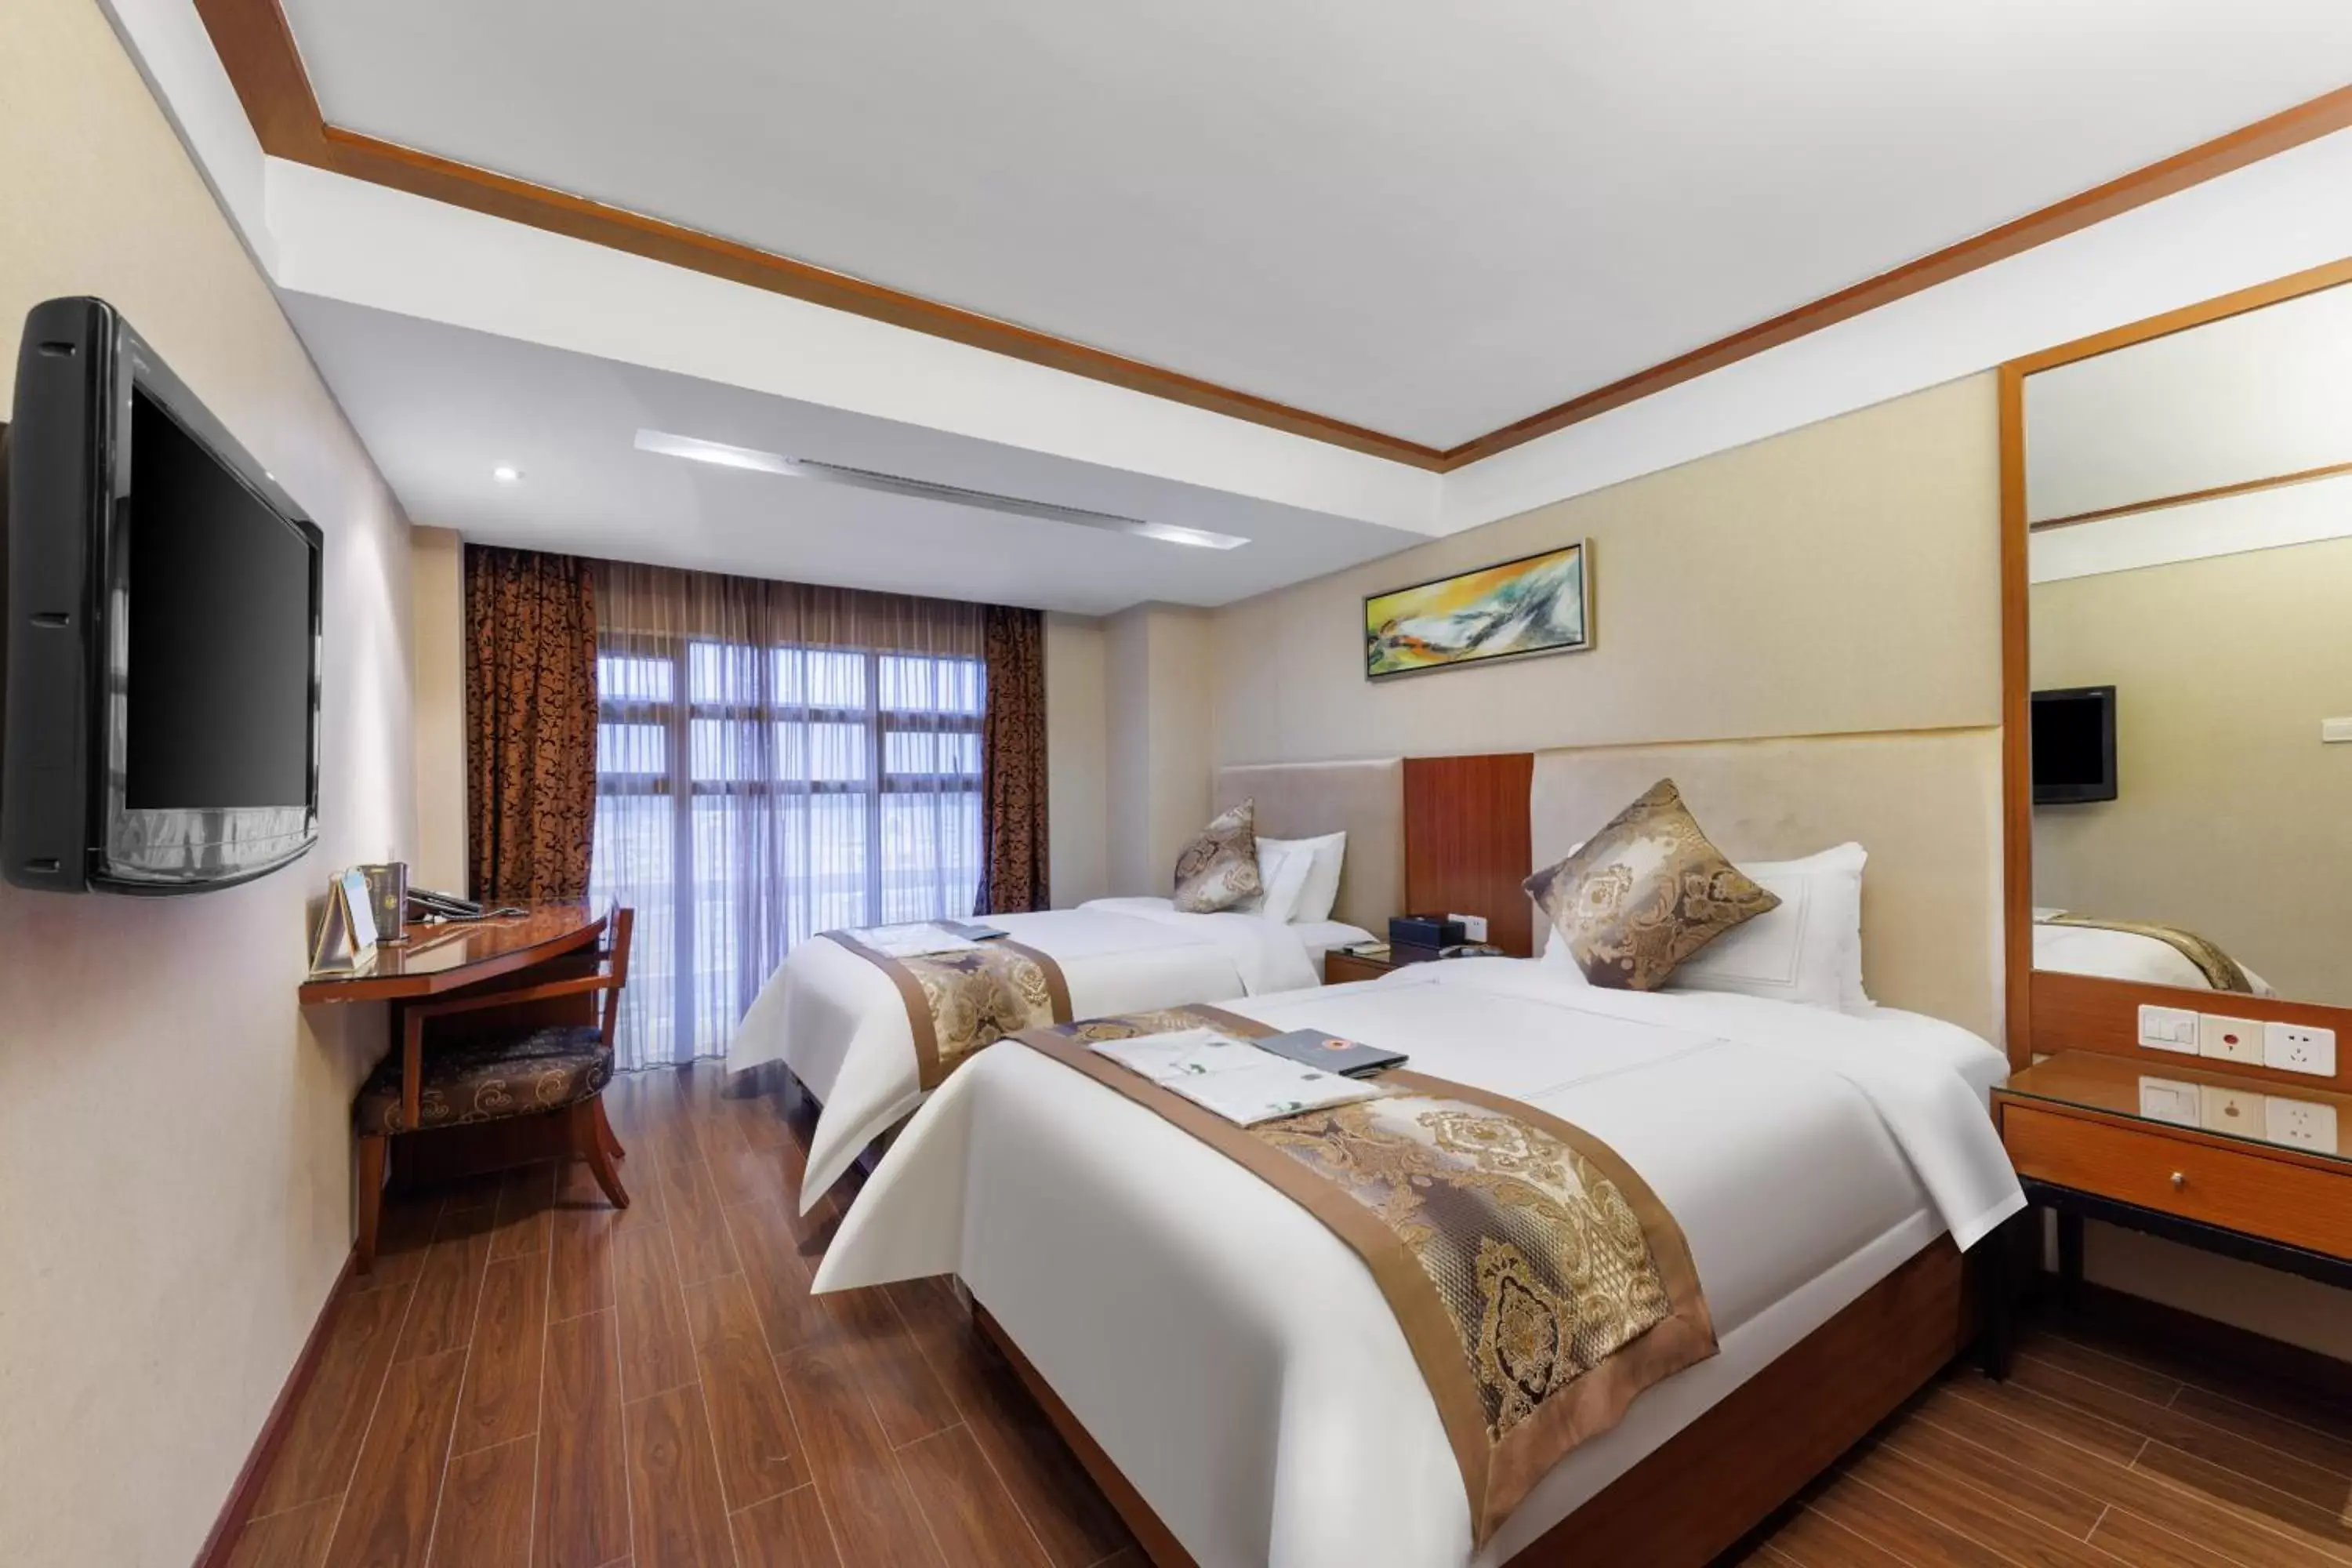 Bedroom in Sunflower Hotel & Residence, Shenzhen